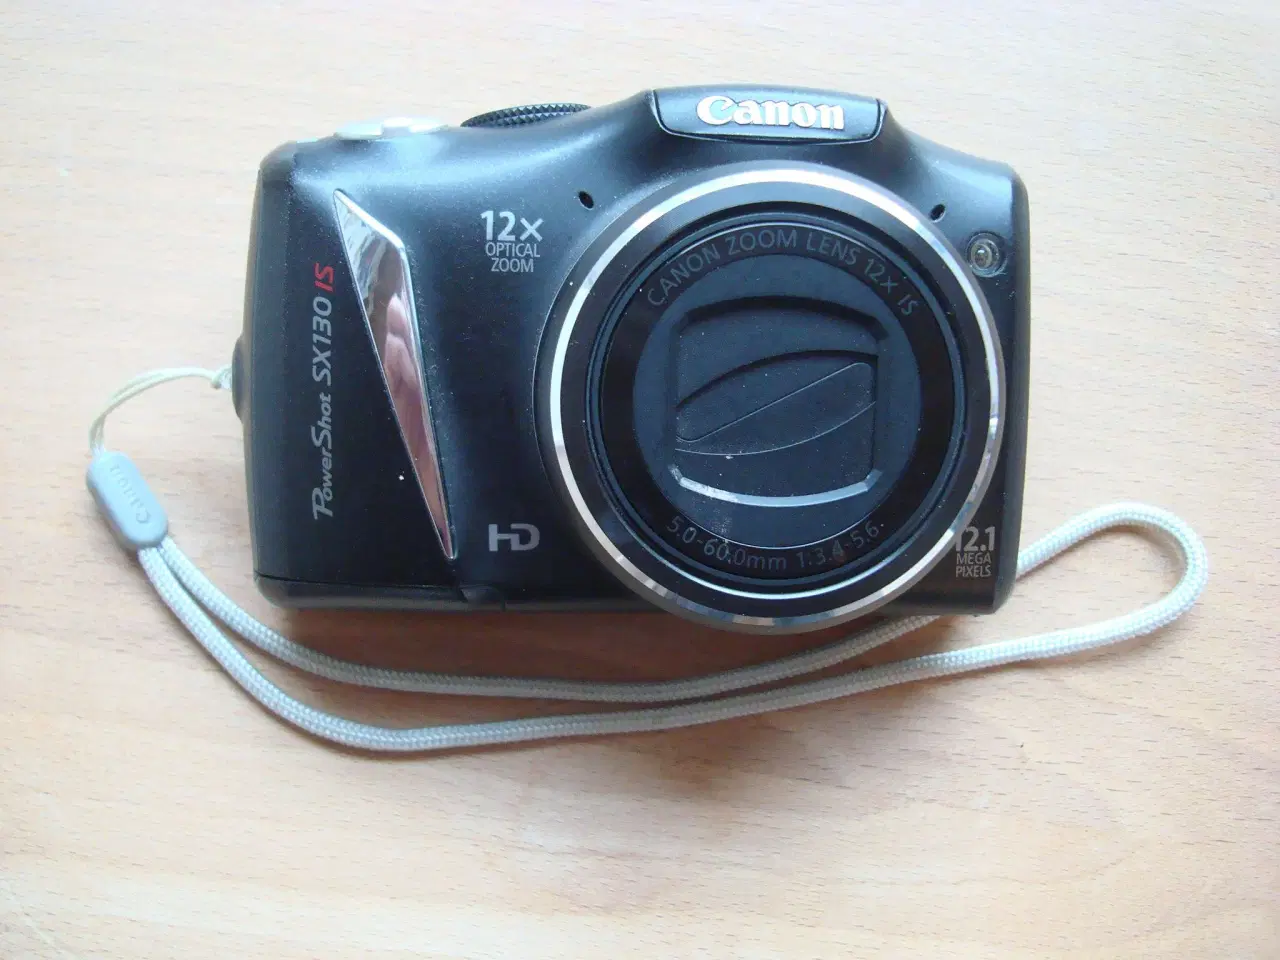 Billede 3 - Canon Power Shoot SX 130